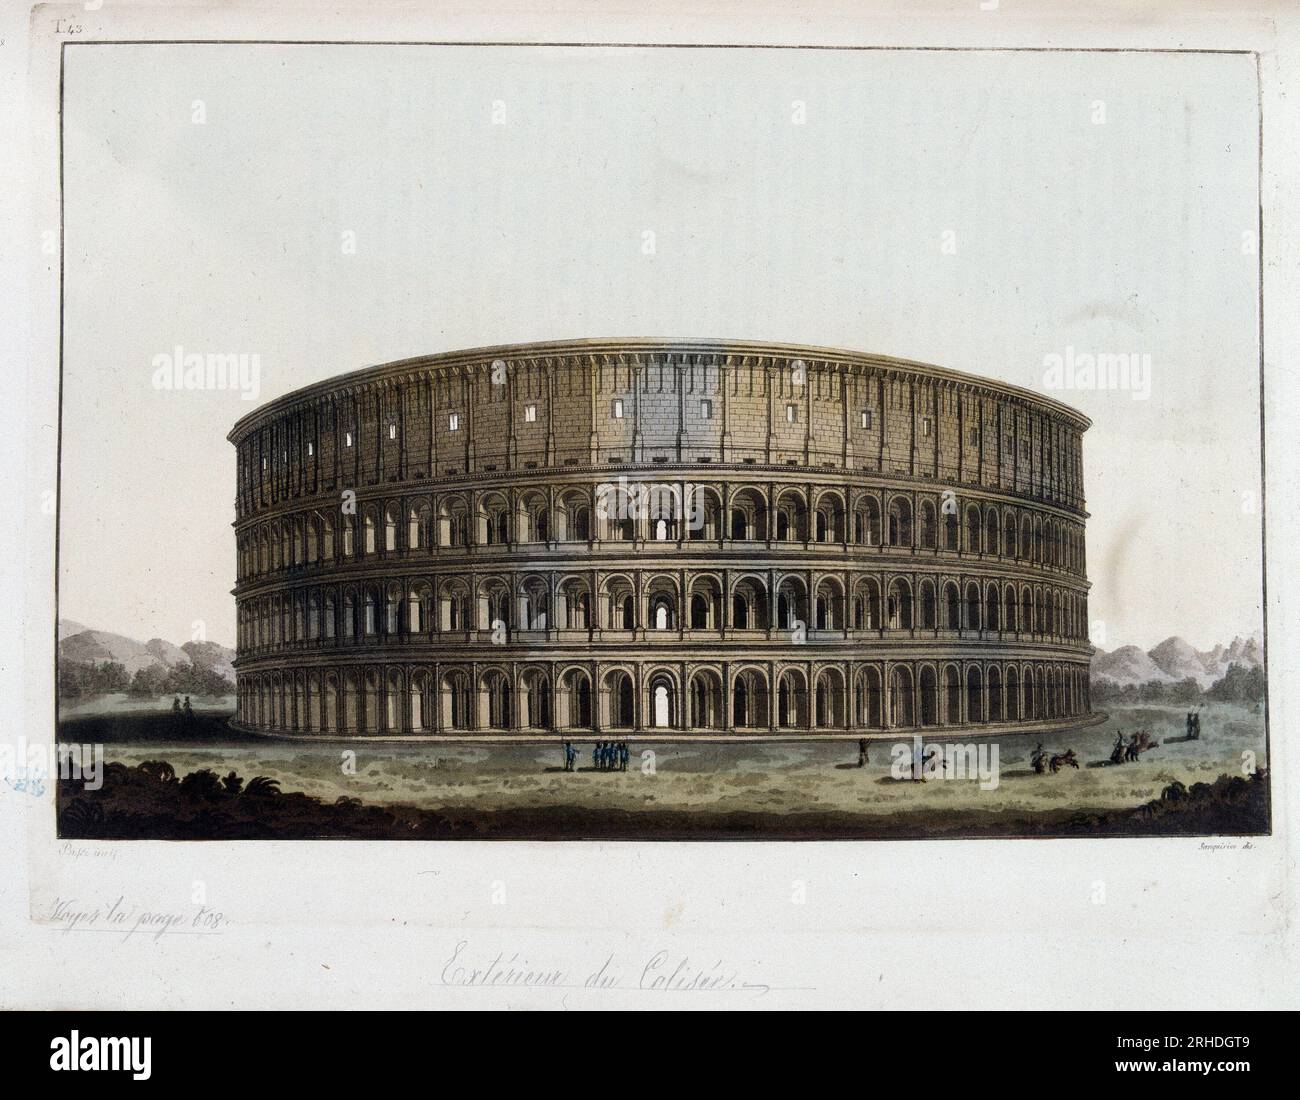 Exterieur du Colisee dans l'antiquite romaine - in 'Le Costume ancien et moderne', 1819-20 par le docteur Jules Ferrario, ed. Milan. Stock Photo